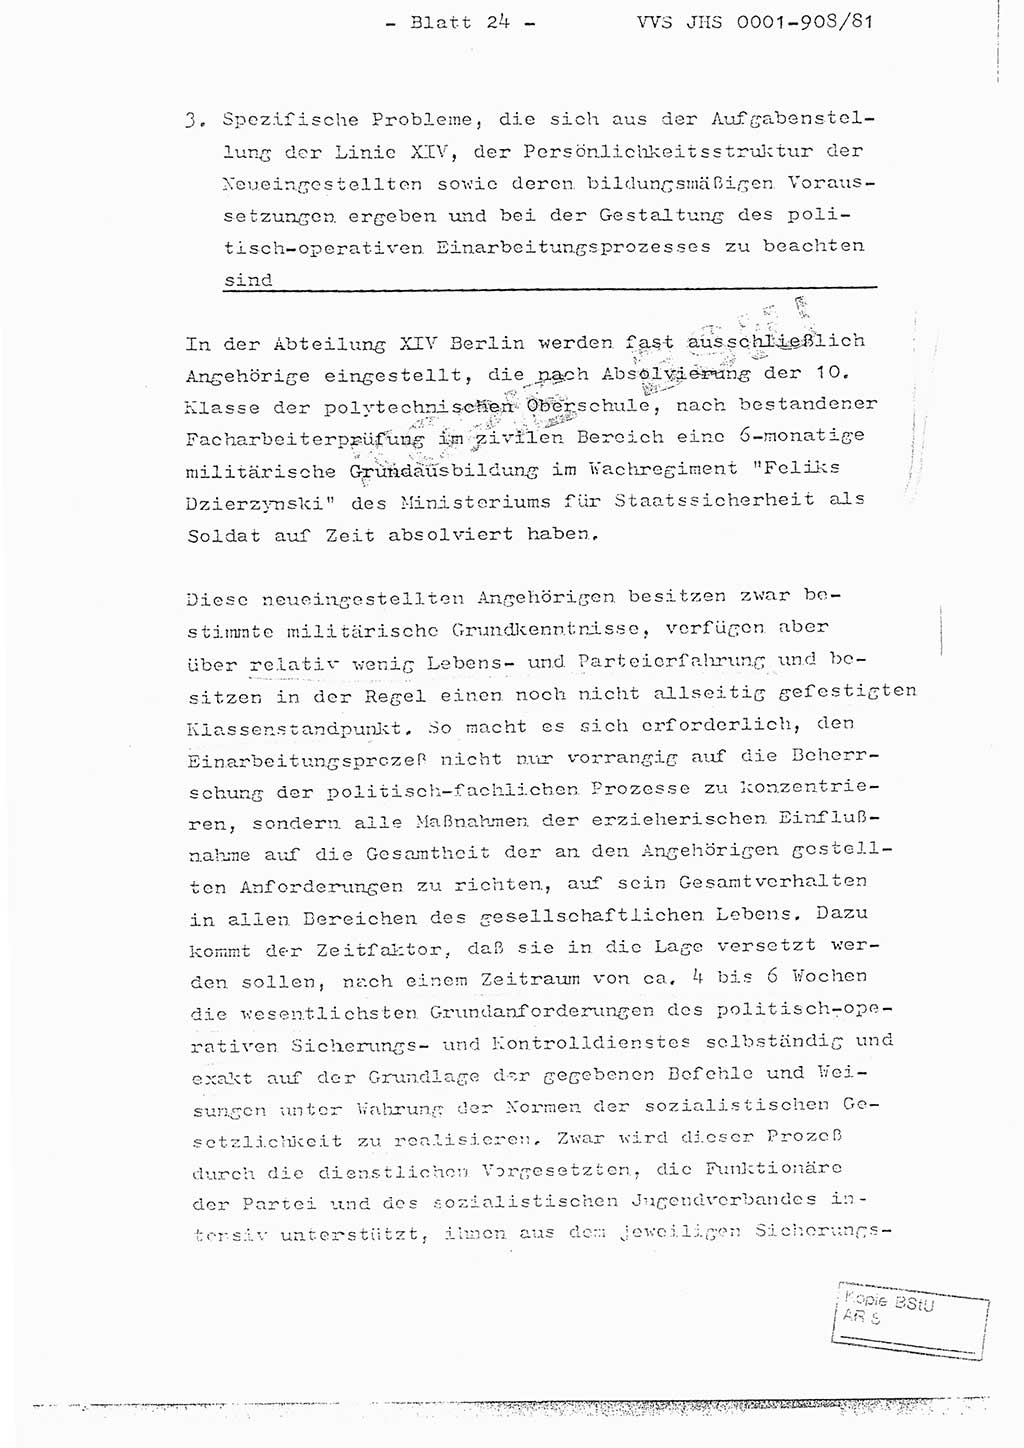 Fachschulabschlußarbeit Oberleutnant Wolfgang Wittmann (Abt. ⅩⅣ), Ministerium für Staatssicherheit (MfS) [Deutsche Demokratische Republik (DDR)], Juristische Hochschule (JHS), Vertrauliche Verschlußsache (VVS) o001-908/82, Potsdam 1982, Blatt 24 (FS-Abschl.-Arb. MfS DDR JHS VVS o001-908/82 1982, Bl. 24)